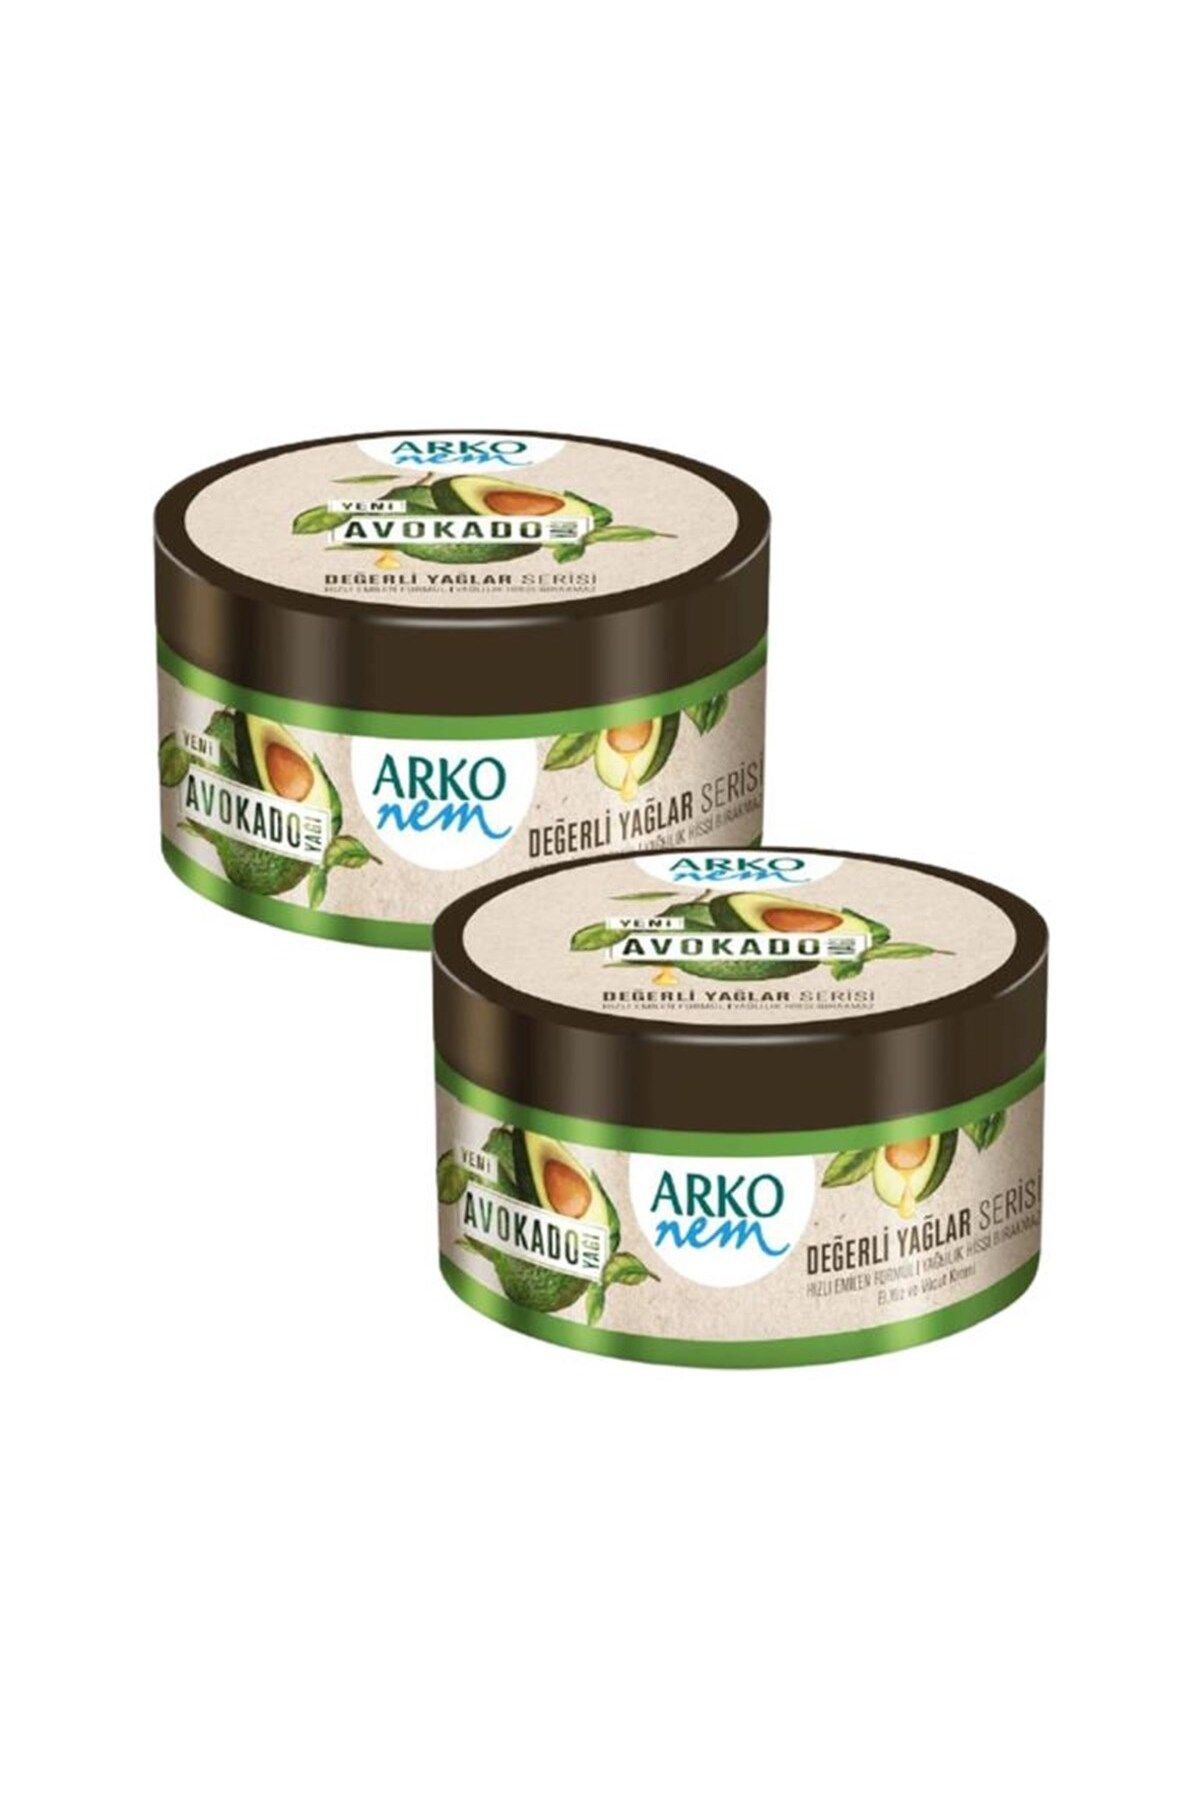 Arko Nem Değerli Yağlar Avokado Yağı El Ve Vücut Kremi 2 X 250 ml